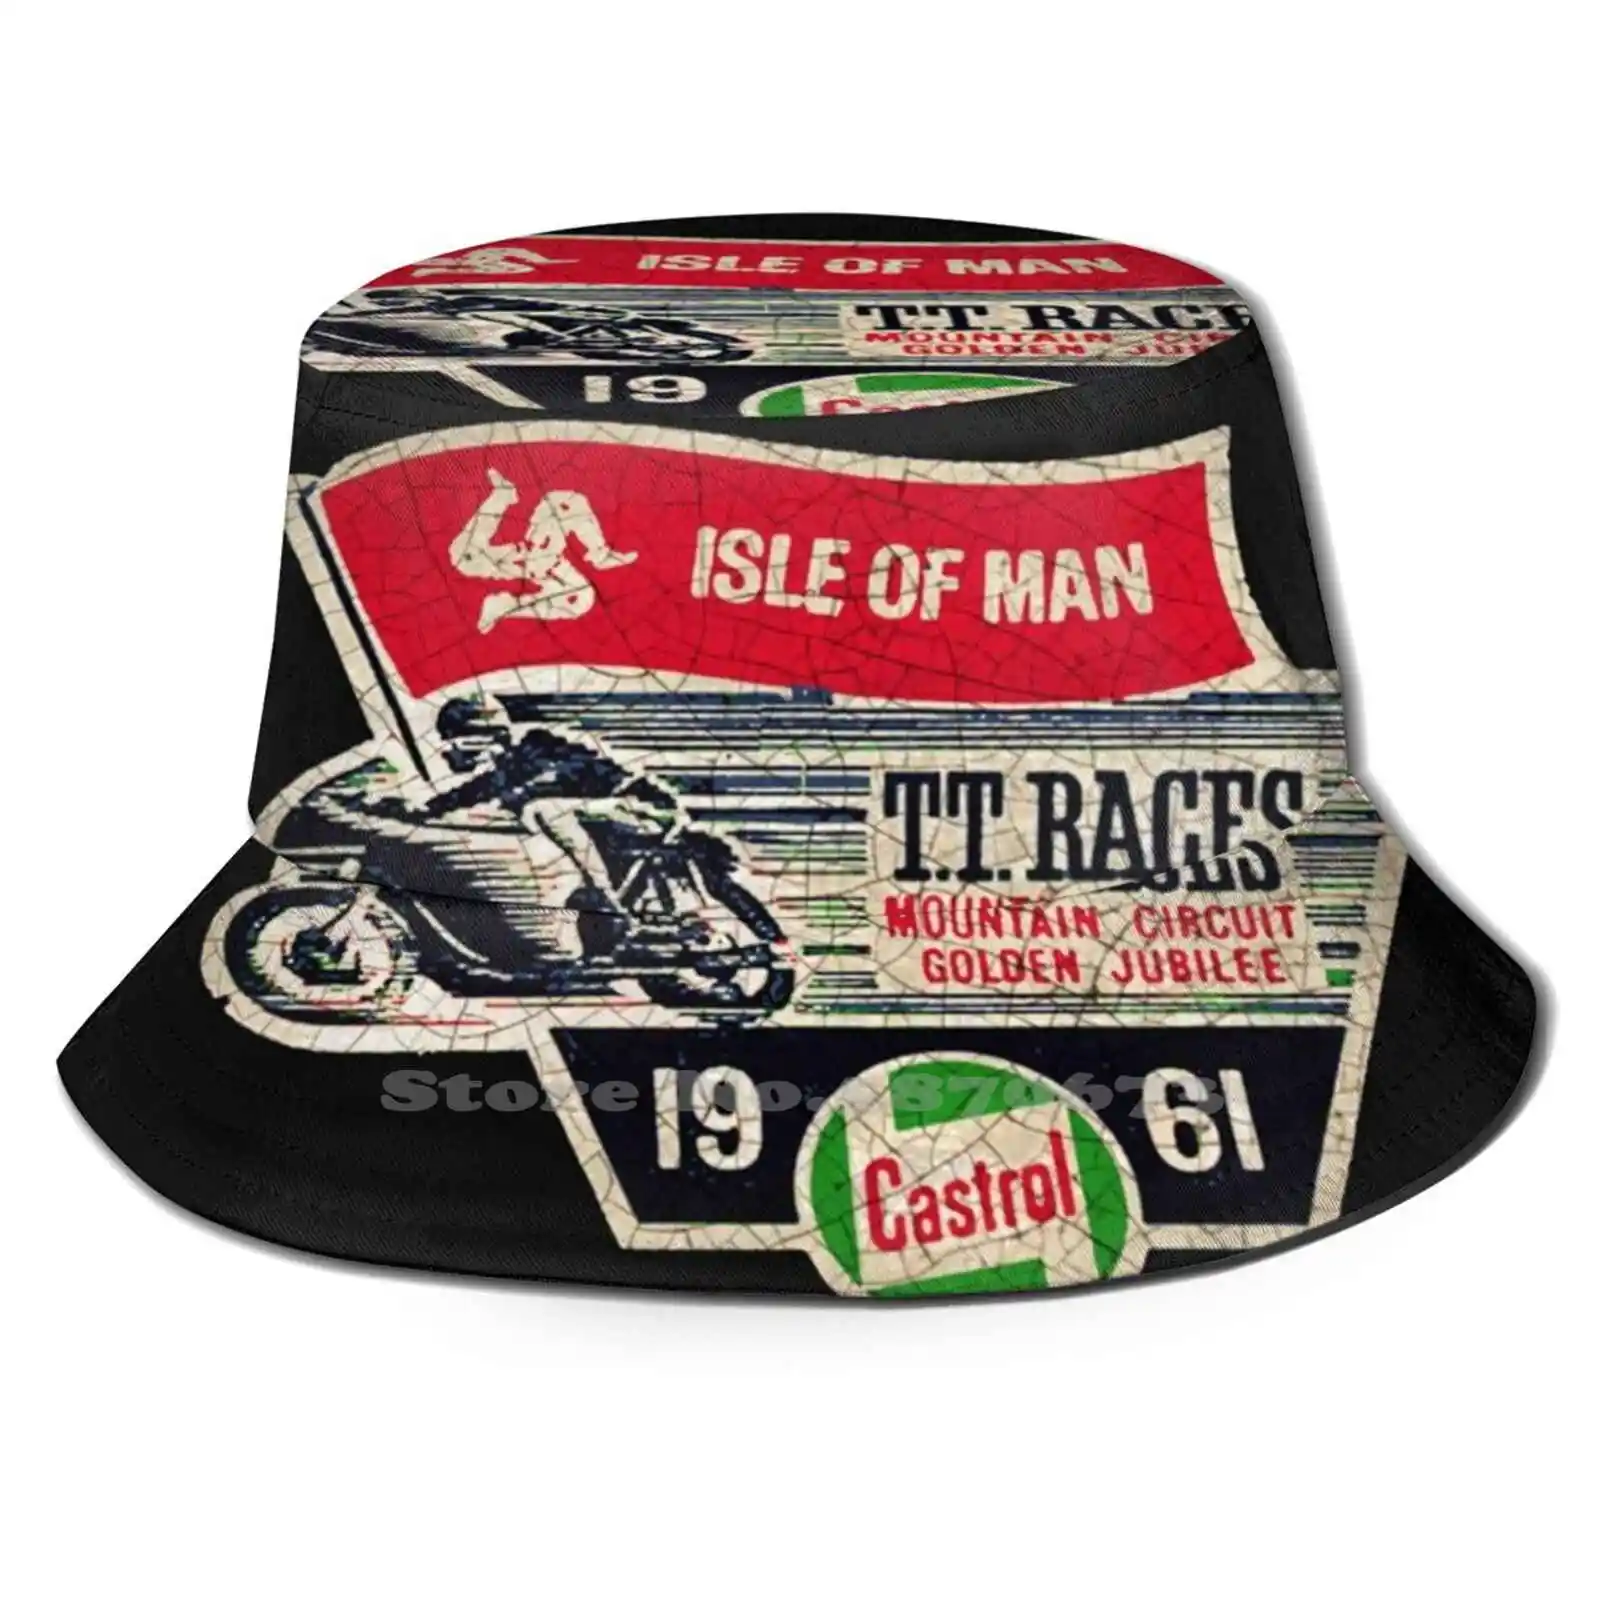 

1961 Рыбацкая шляпа с изображением острова Мэн ТТ скачки 1961 Панама кепки гоночные чеки с изображением остров Мэн ТТ велосипедные клубы без спичек на День отца